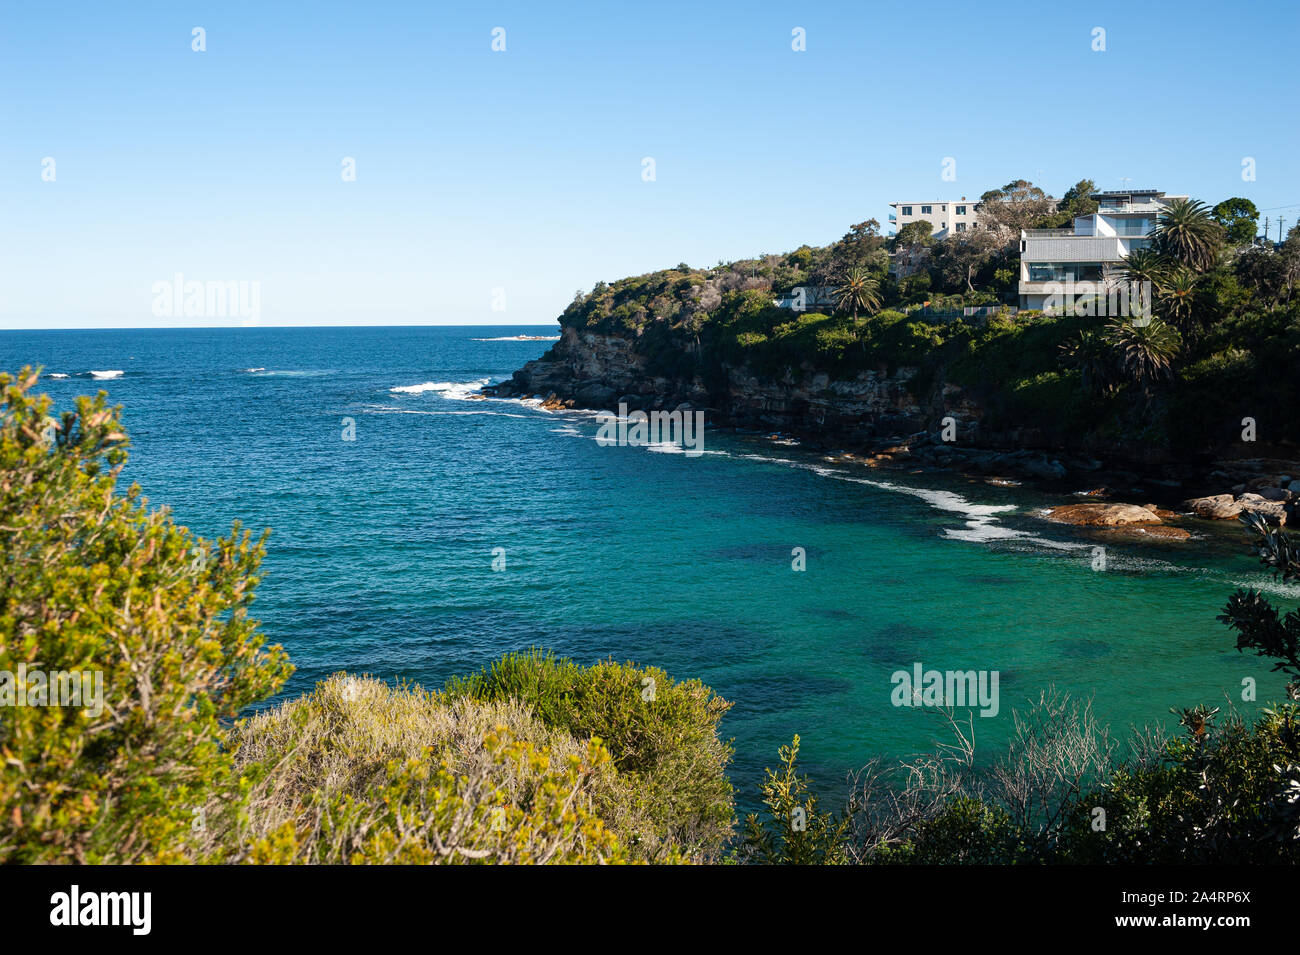 24.09.2019, Sydney, New South Wales, Australia - Vista de una pequeña bahía en el bondi de Coogee camina bajo un cielo azul claro. Foto de stock